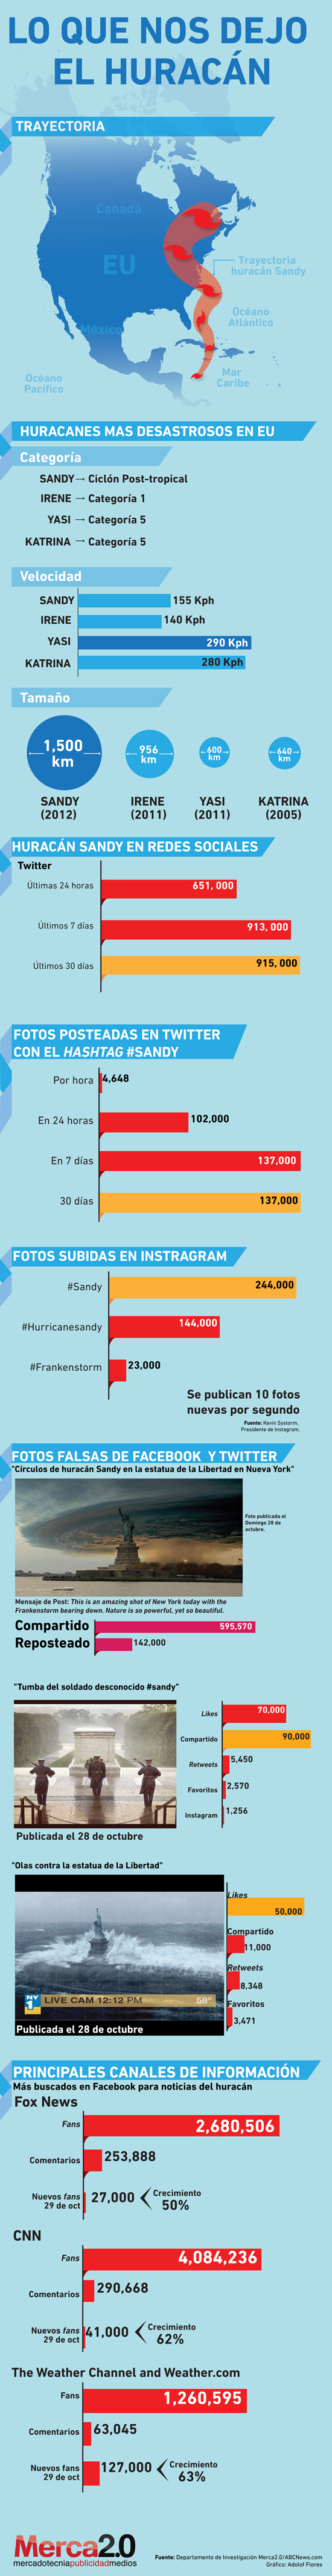 Huracán Sandy en las redes sociales